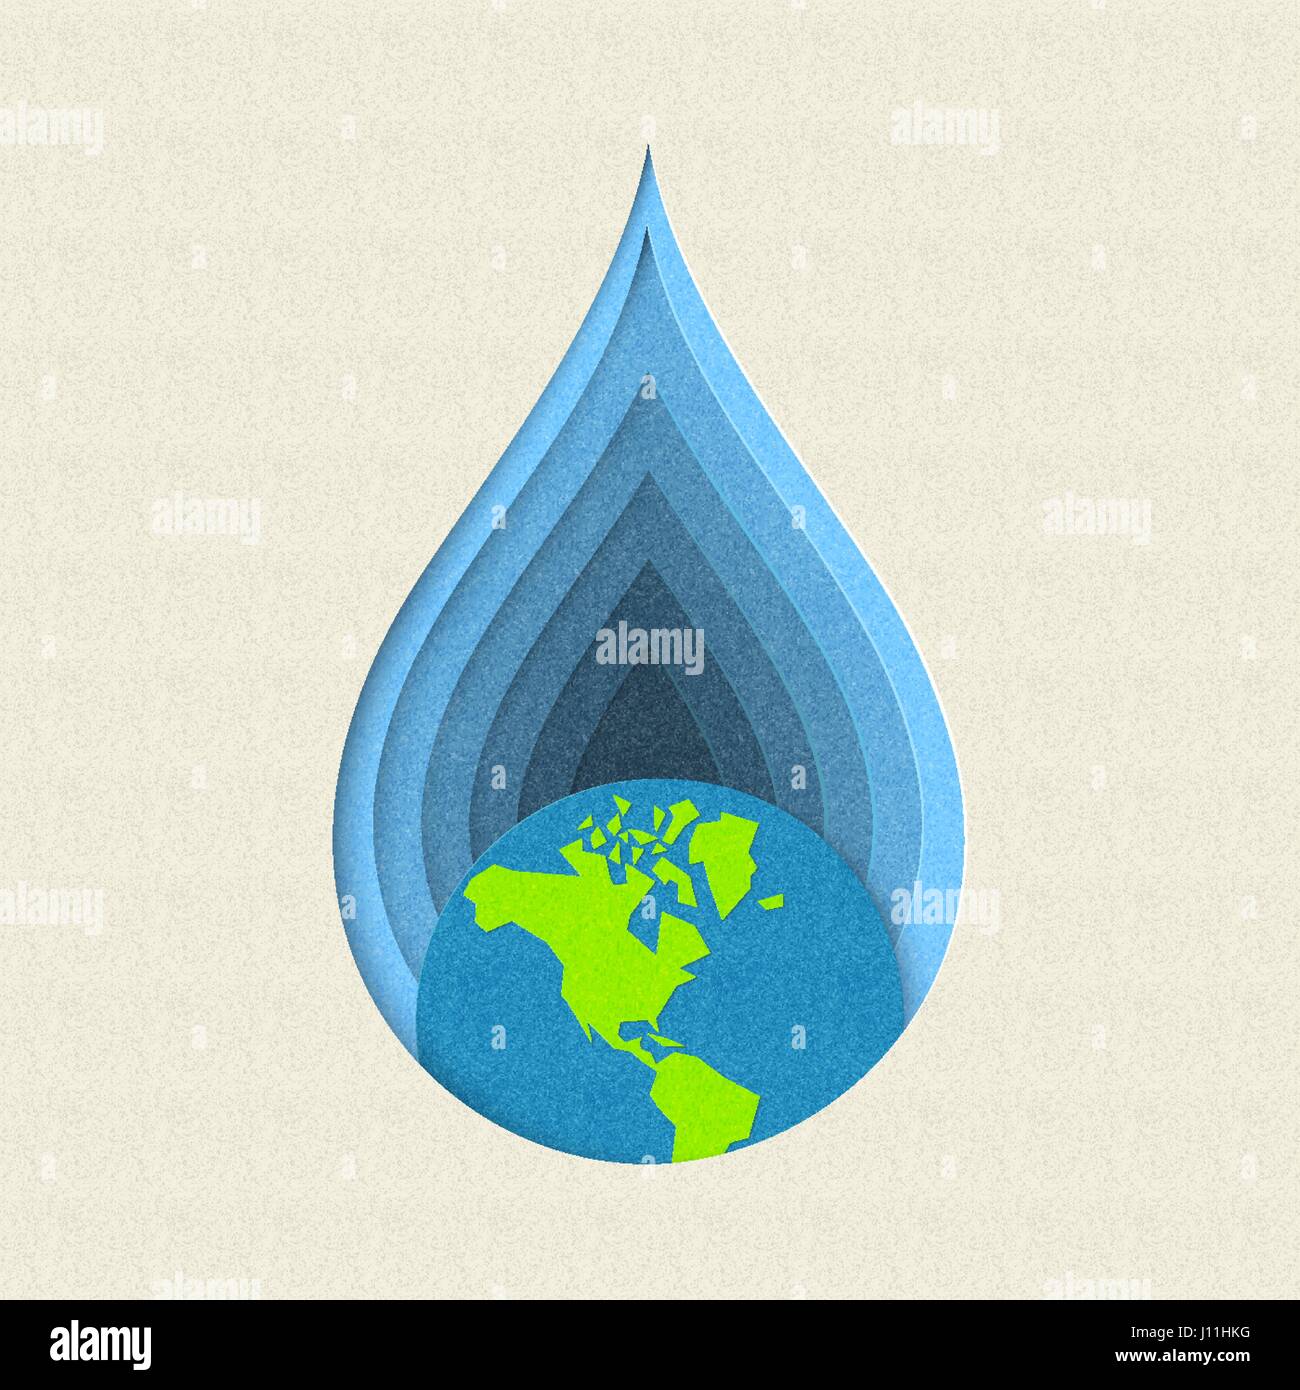 Le jour de la terre papier coupé concept illustration pour l'eau potable et de soins de la préservation de l'environnement. Vecteur EPS10. Illustration de Vecteur